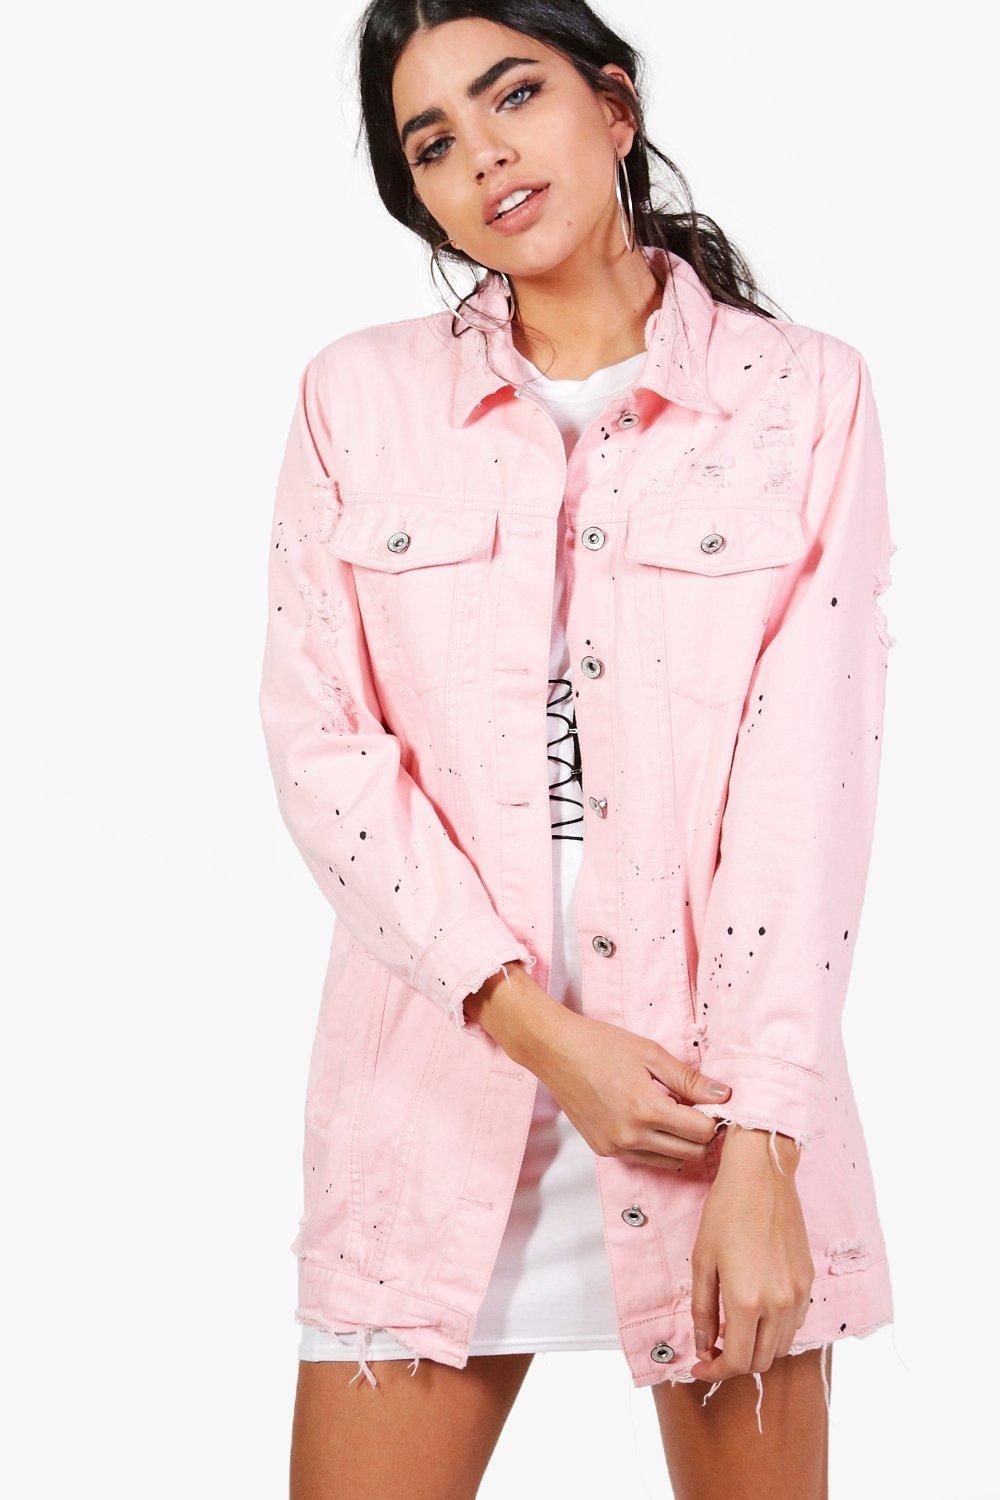 Jilly Longline Paint Splatter Jean Jacket pink | Boohoo.com (US & CA)